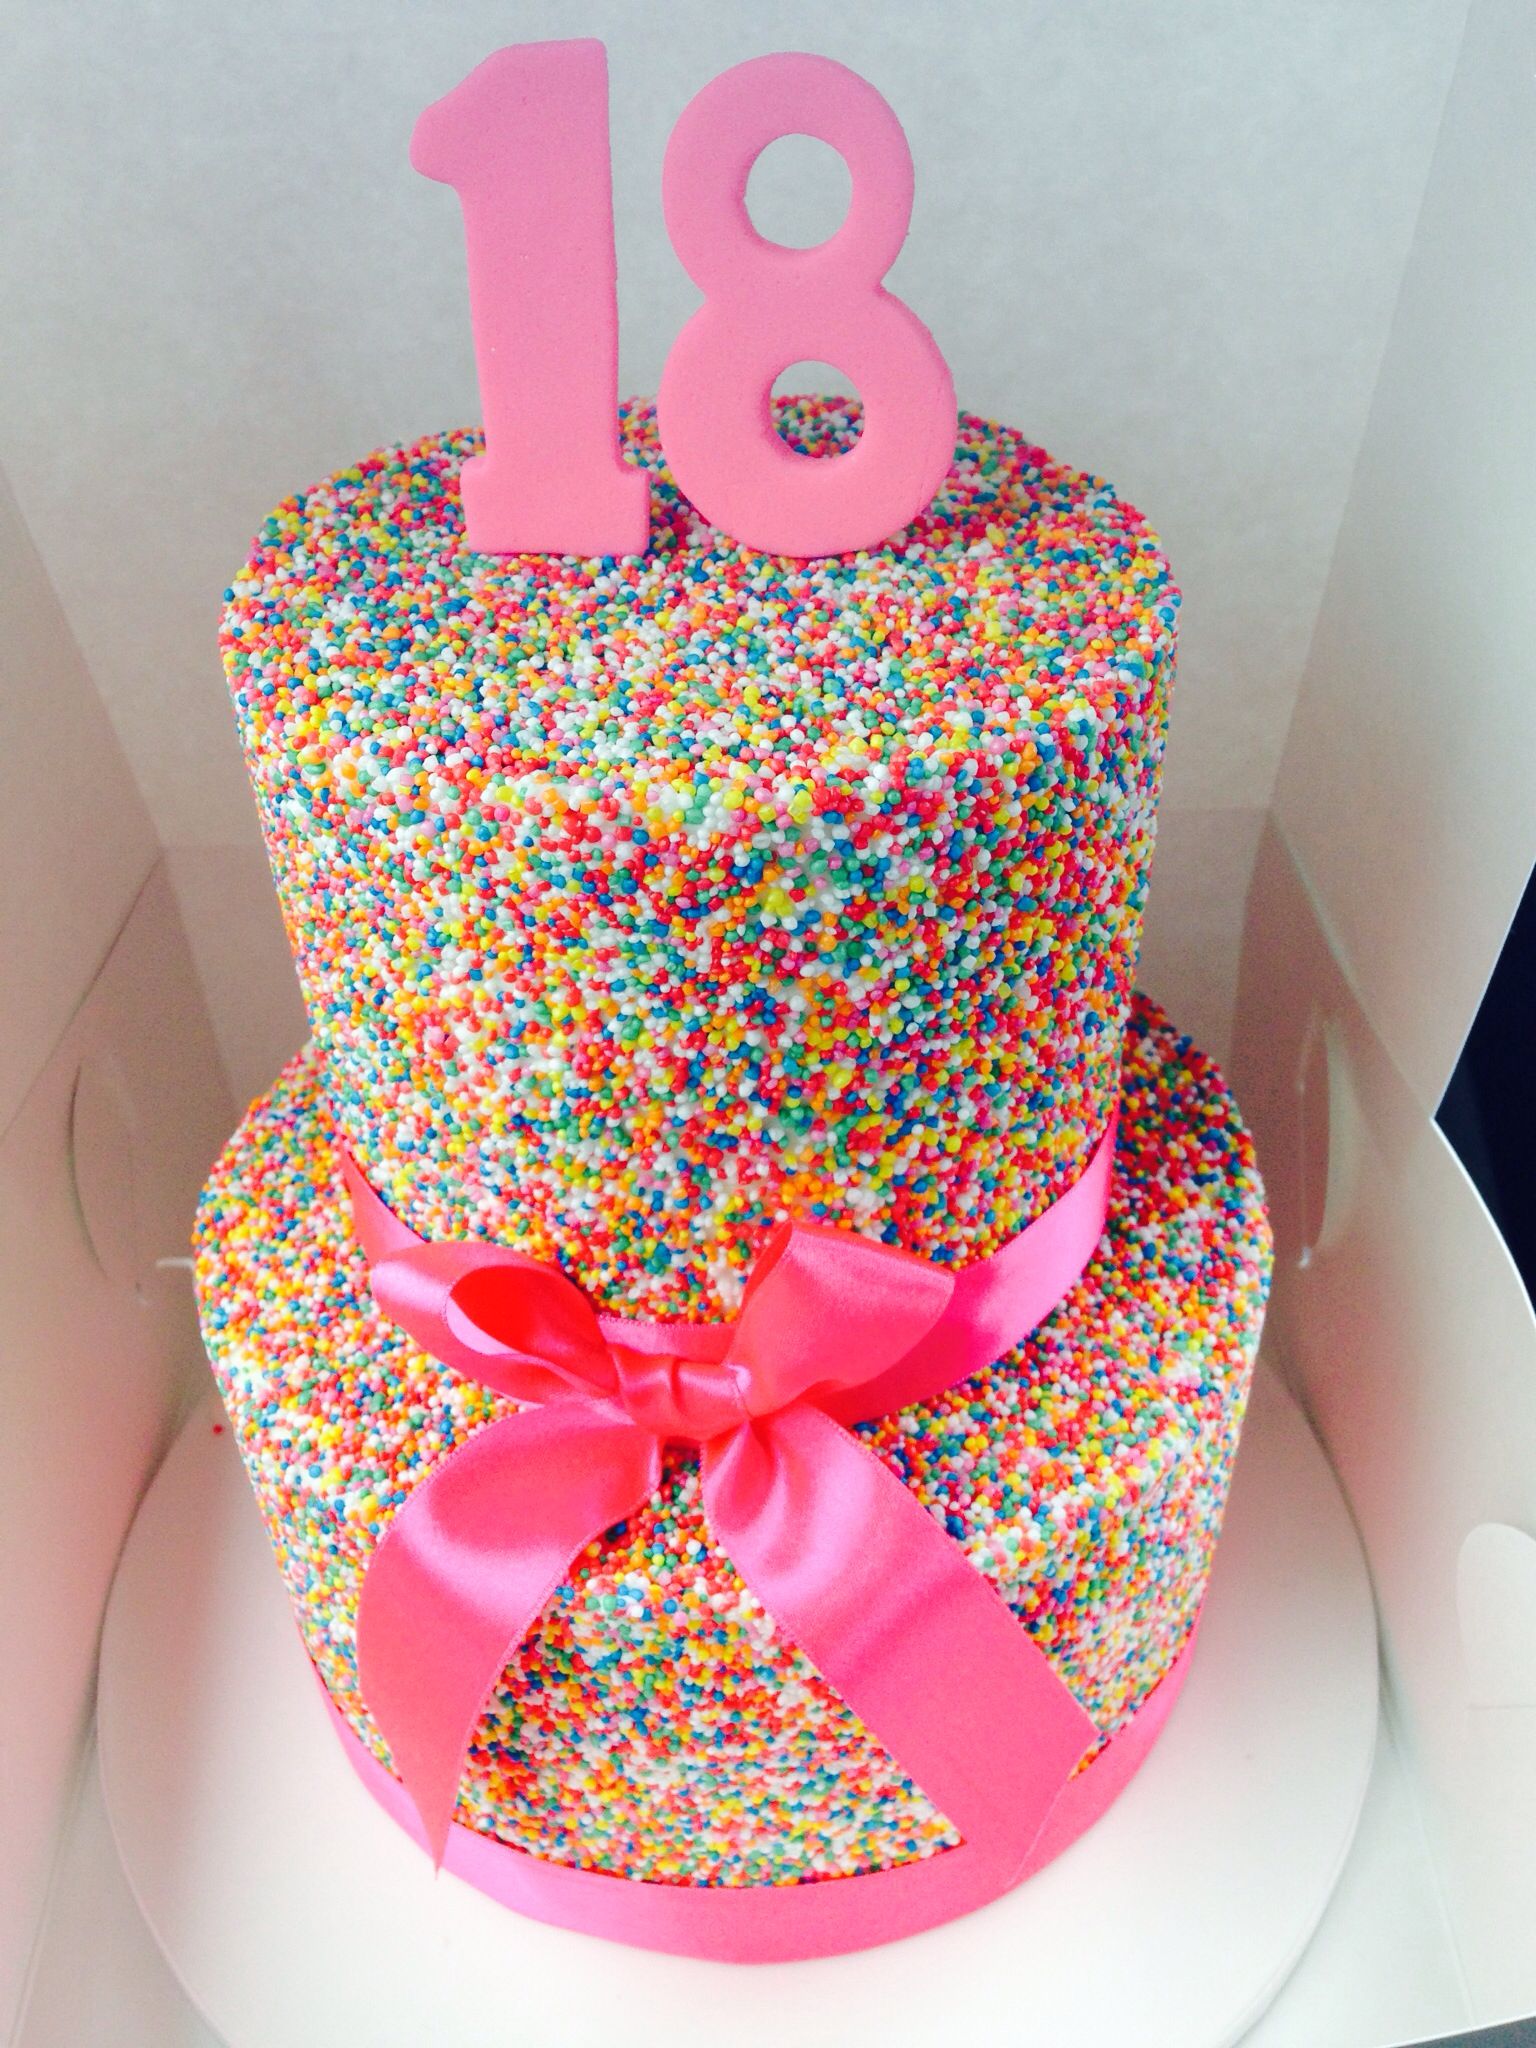 Фото торта на день рождения девочке на 12 лет